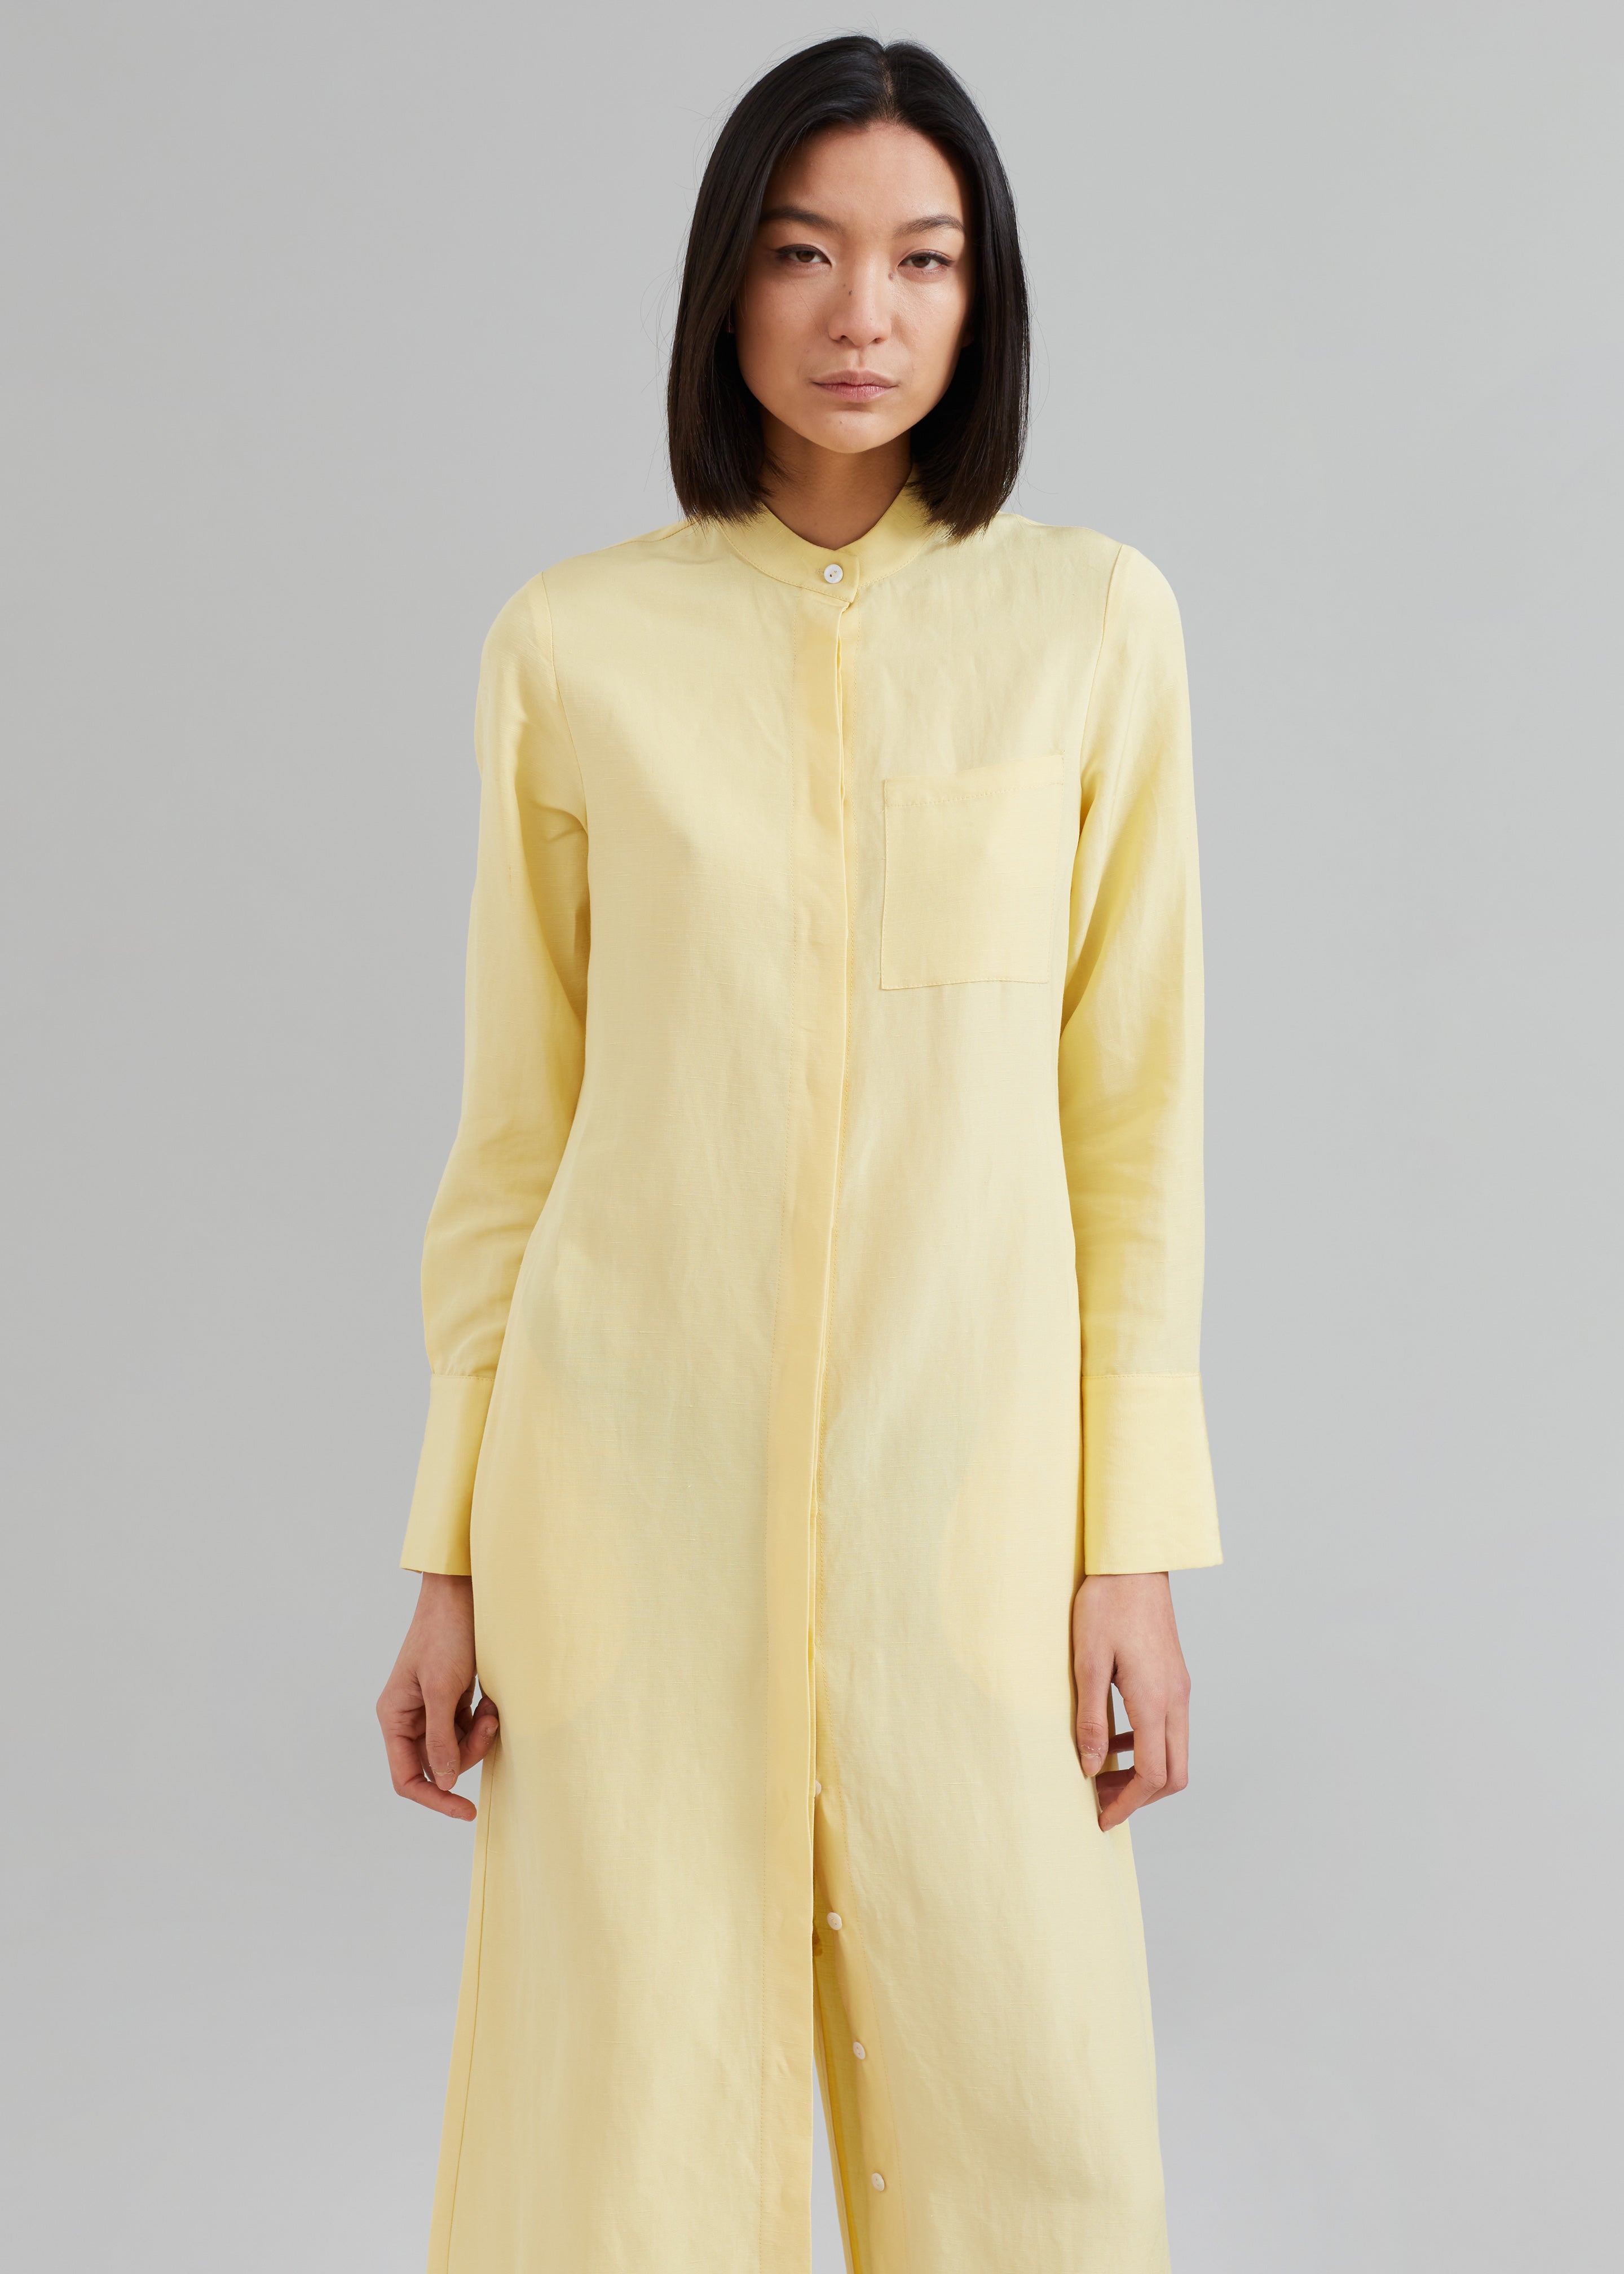 MATIN Collarless Shirt Dress - Butter – The Frankie Shop